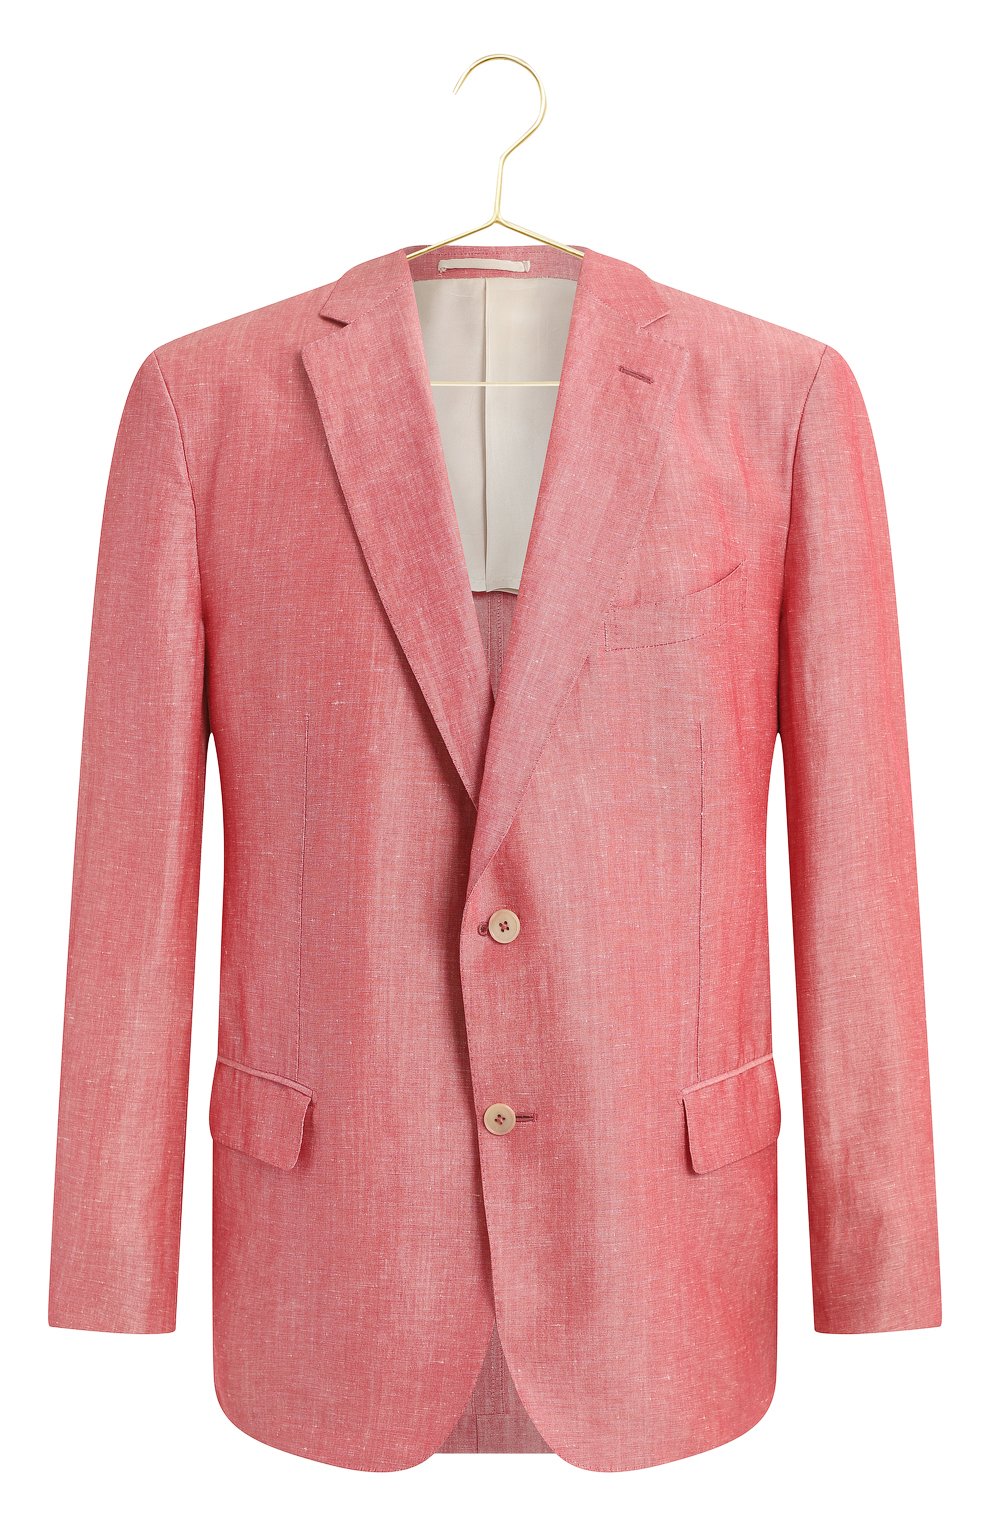 Пиджак изо льна и шерсти | Zilli | Розовый - 1